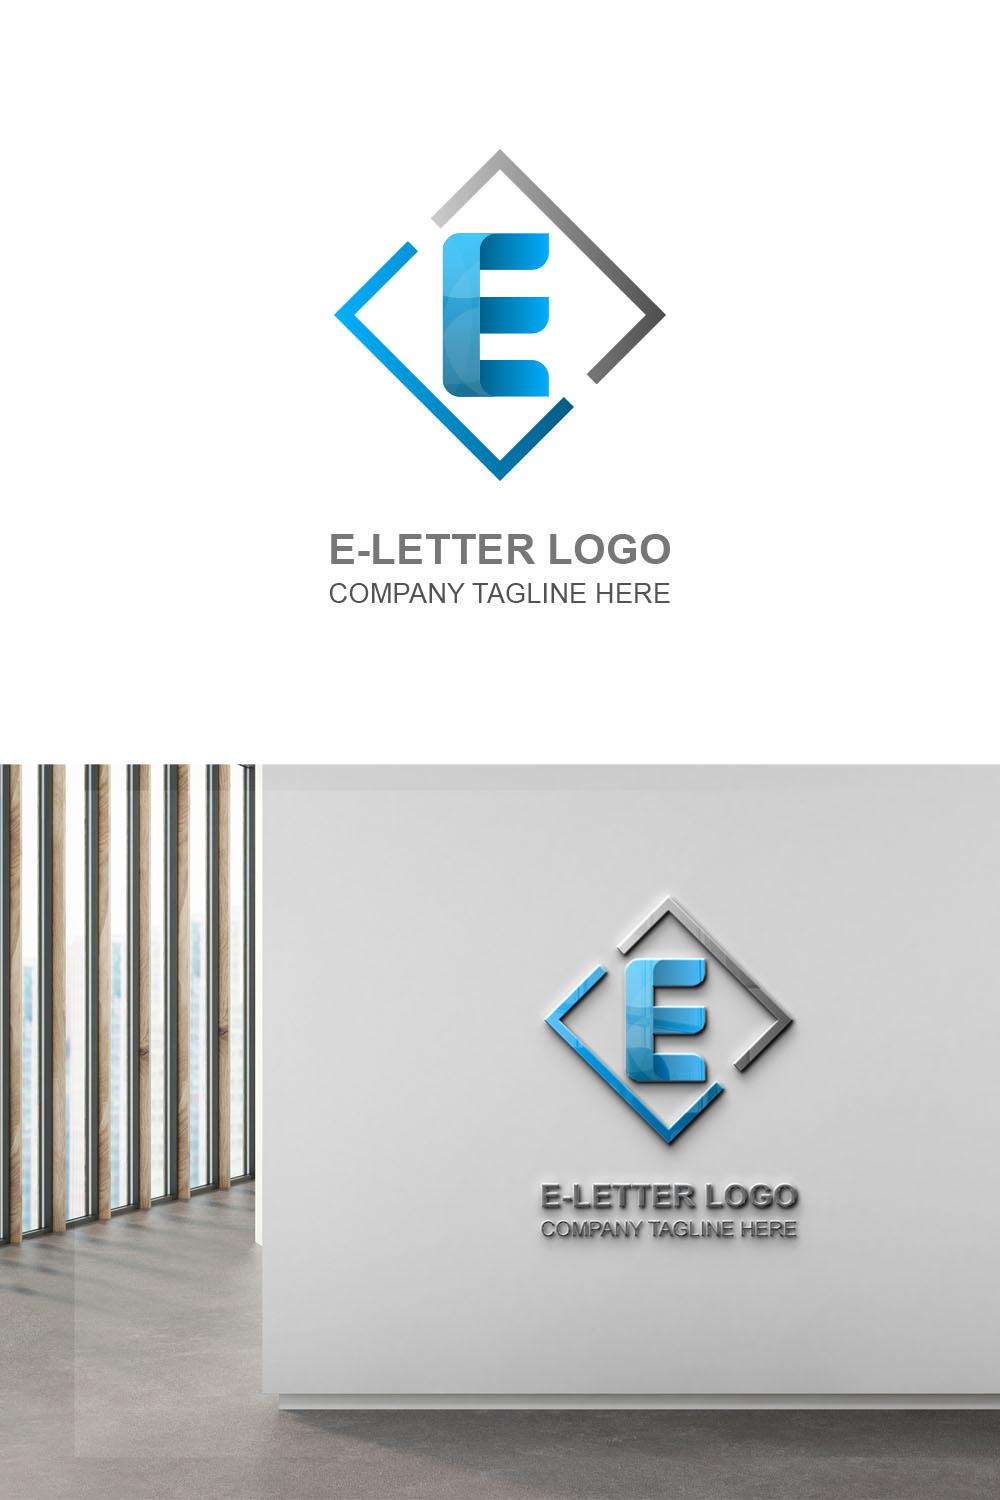 E Letter Logo Pinterest collage image.